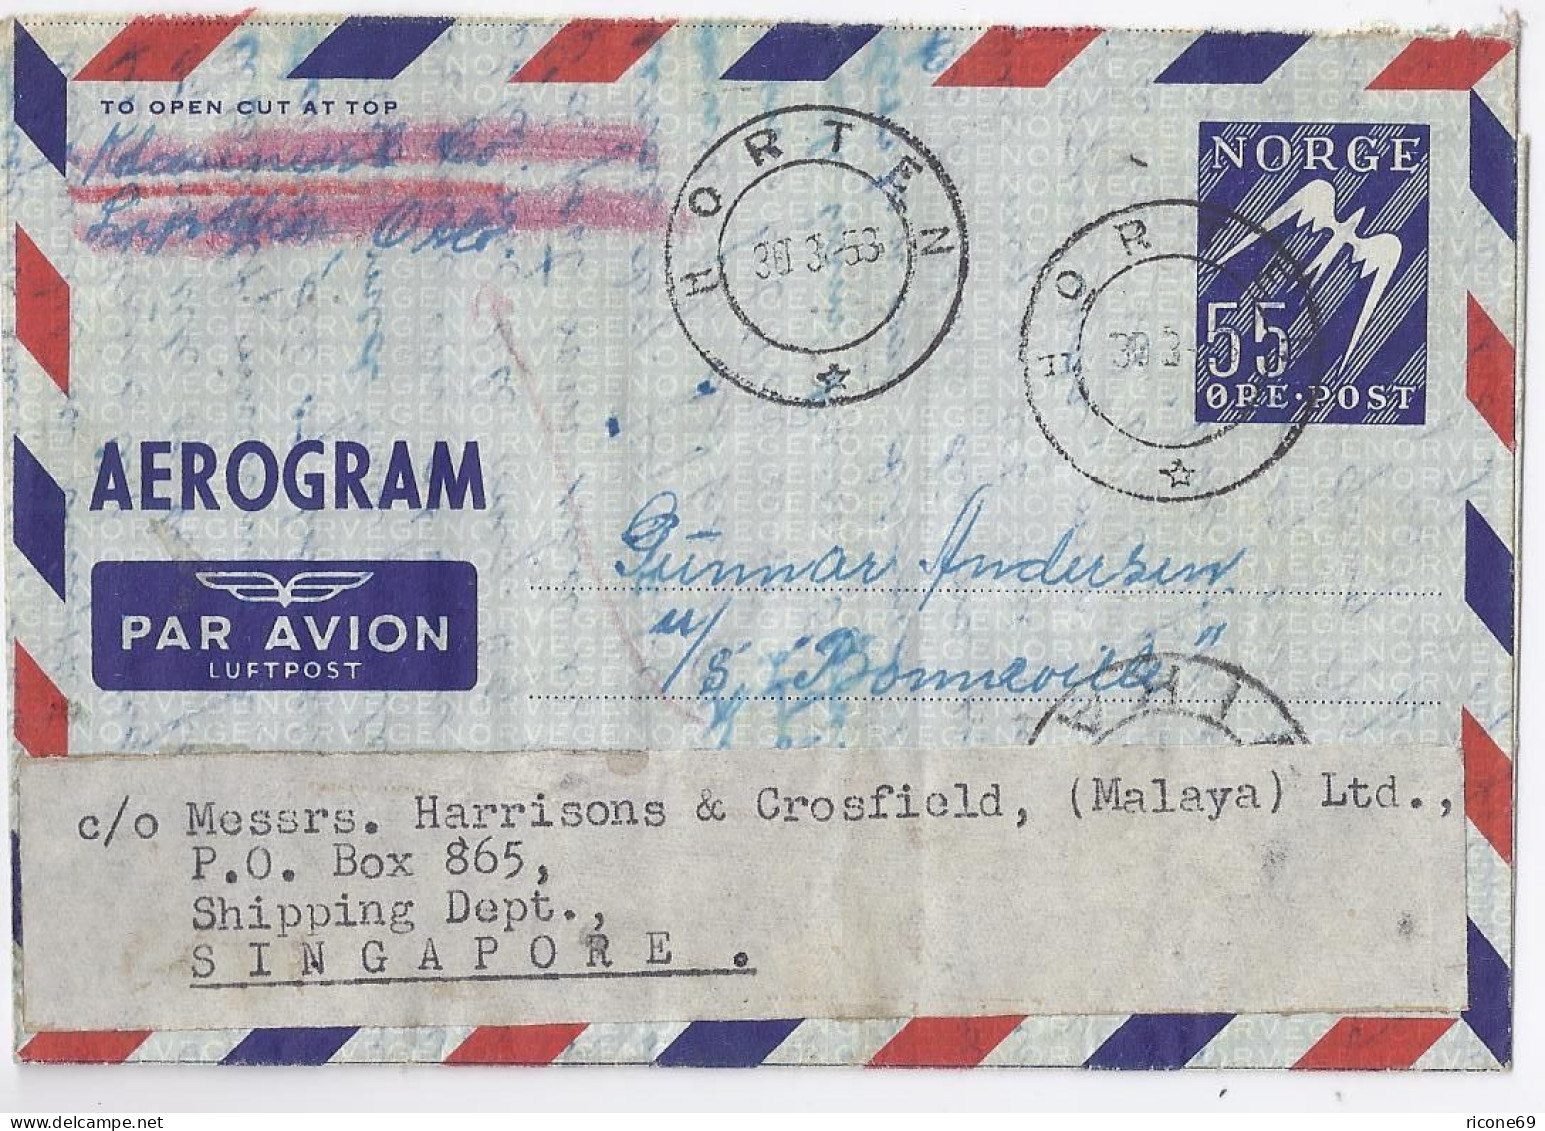 Norwegen Singapore 1953, 55 öre Aerogramm Ganzsache Brief V. Horten. #1617 - Briefe U. Dokumente